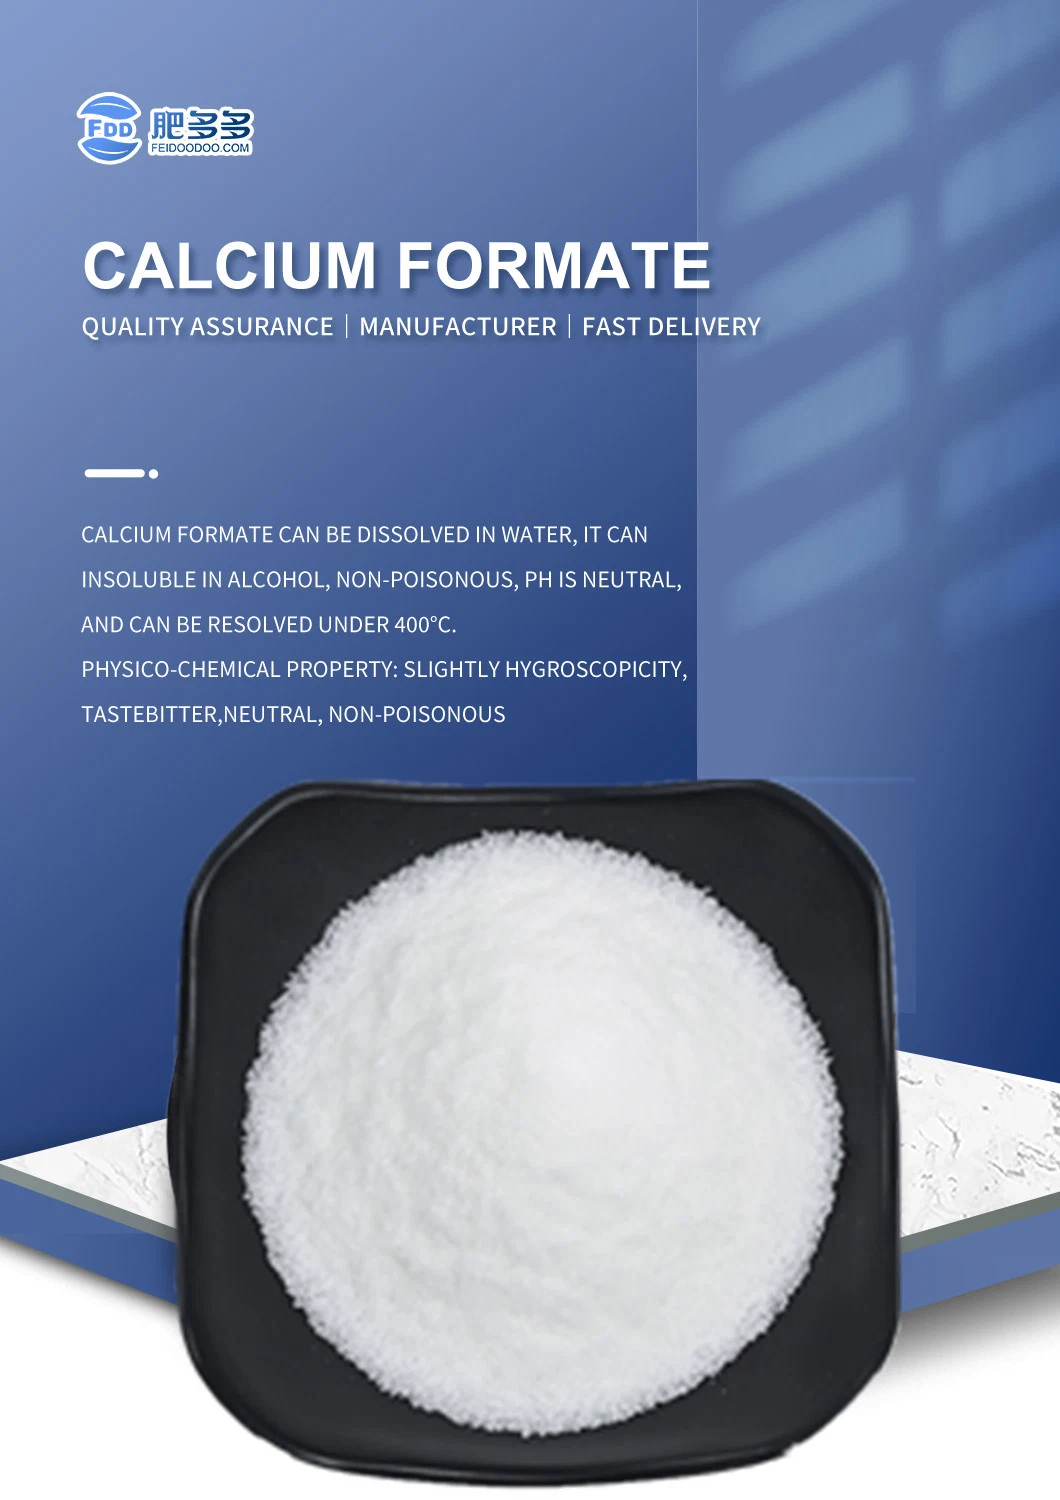 High Quality Inorganic Salt Calcium Formate CAS 544-17-2